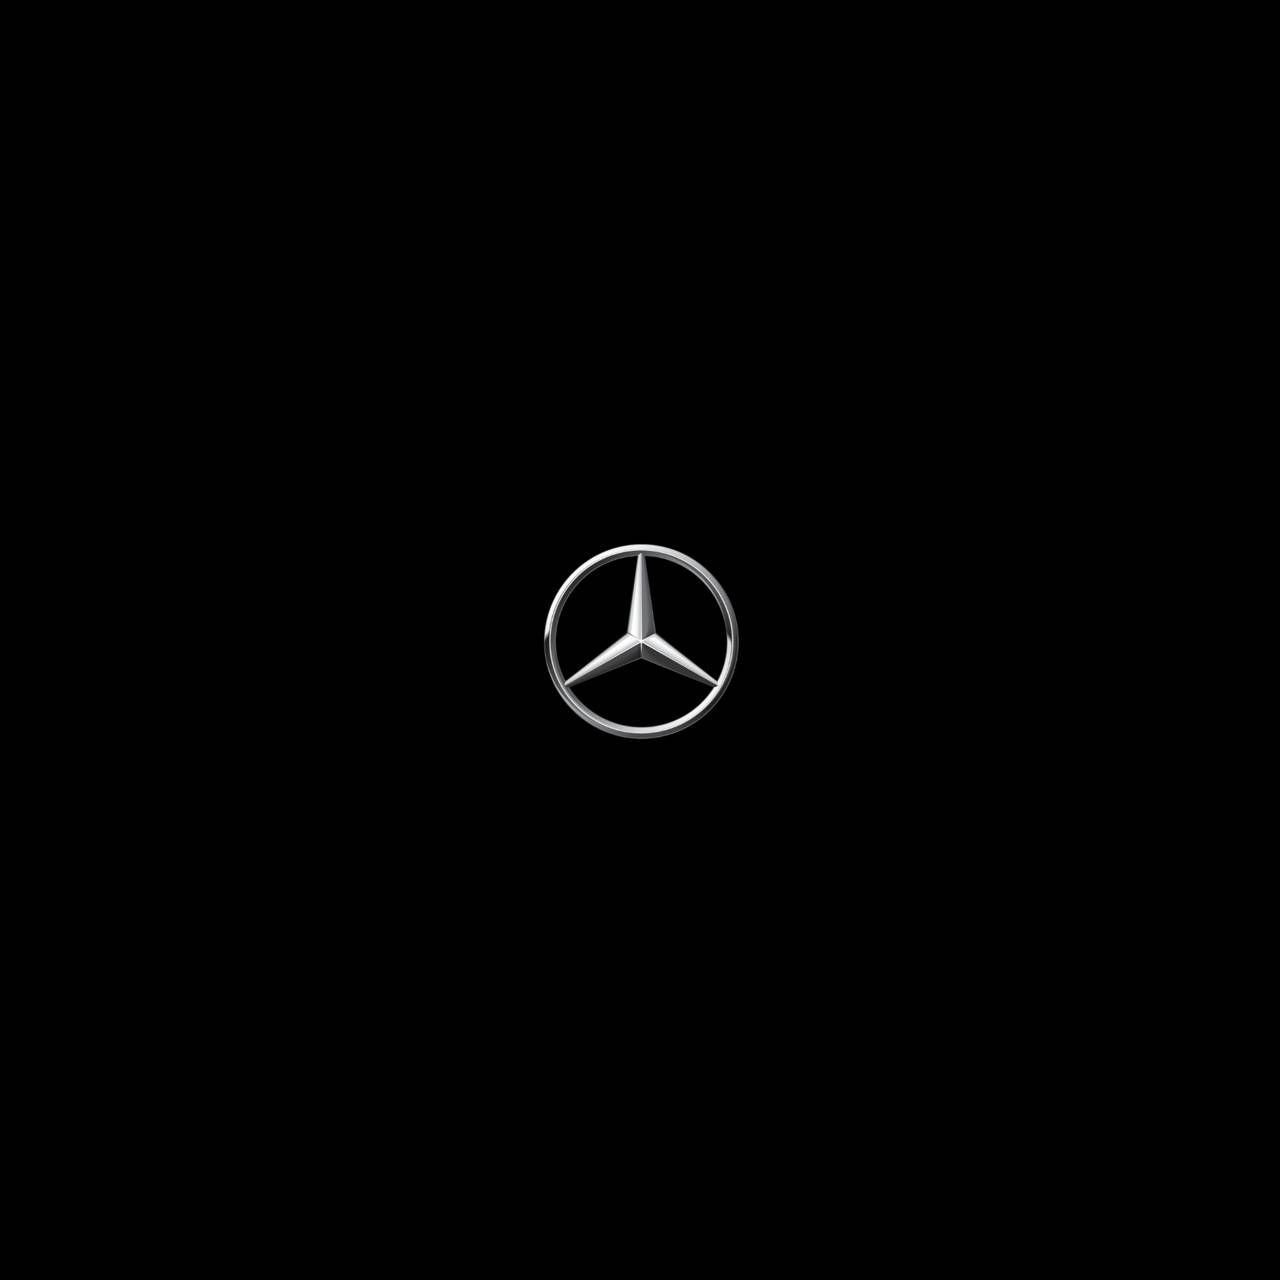 Mercedes Benz AMOLED wallpaper